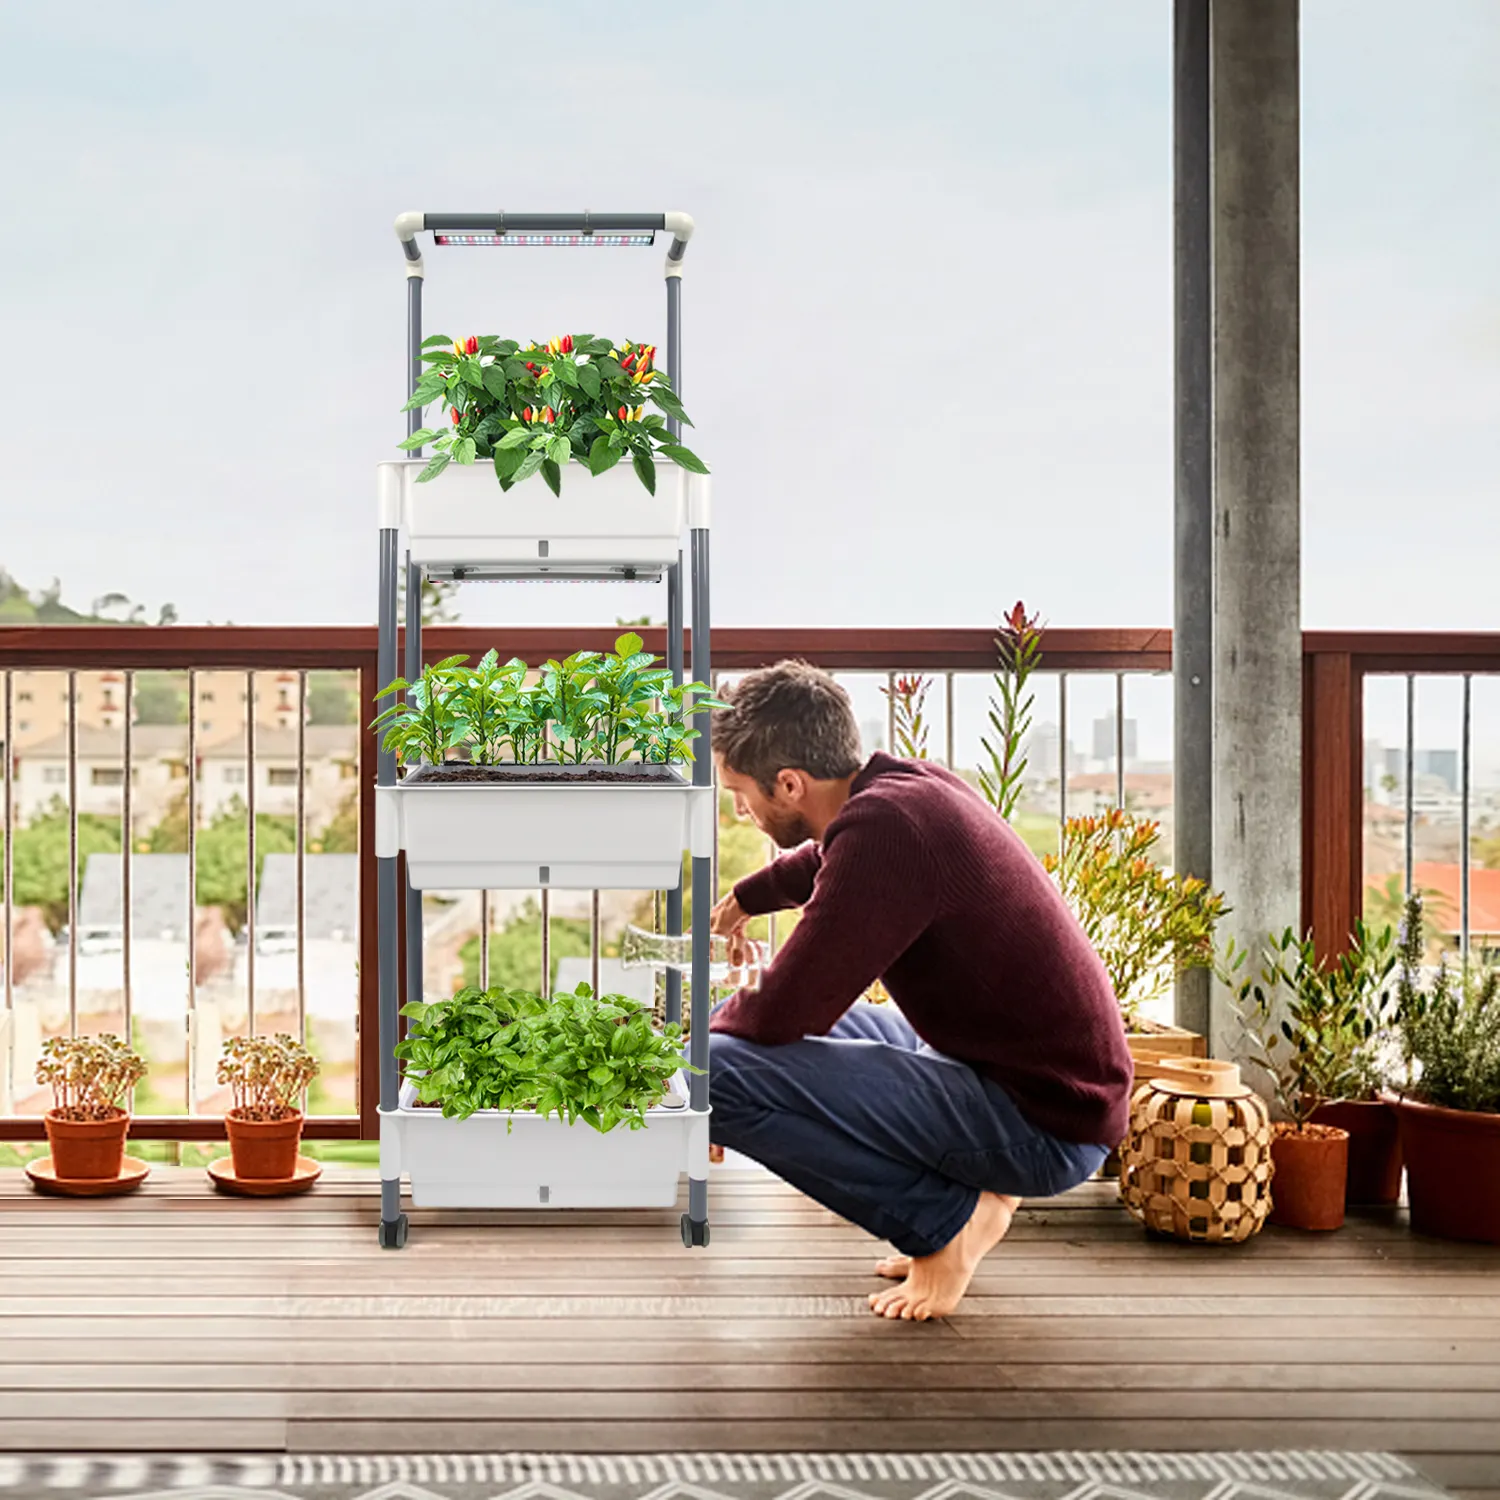 Macetas grandes de 3 niveles, soportes de luces agrícolas verticales para interiores, Kit de cultivo de plantas, torre de jardín para floración de verduras